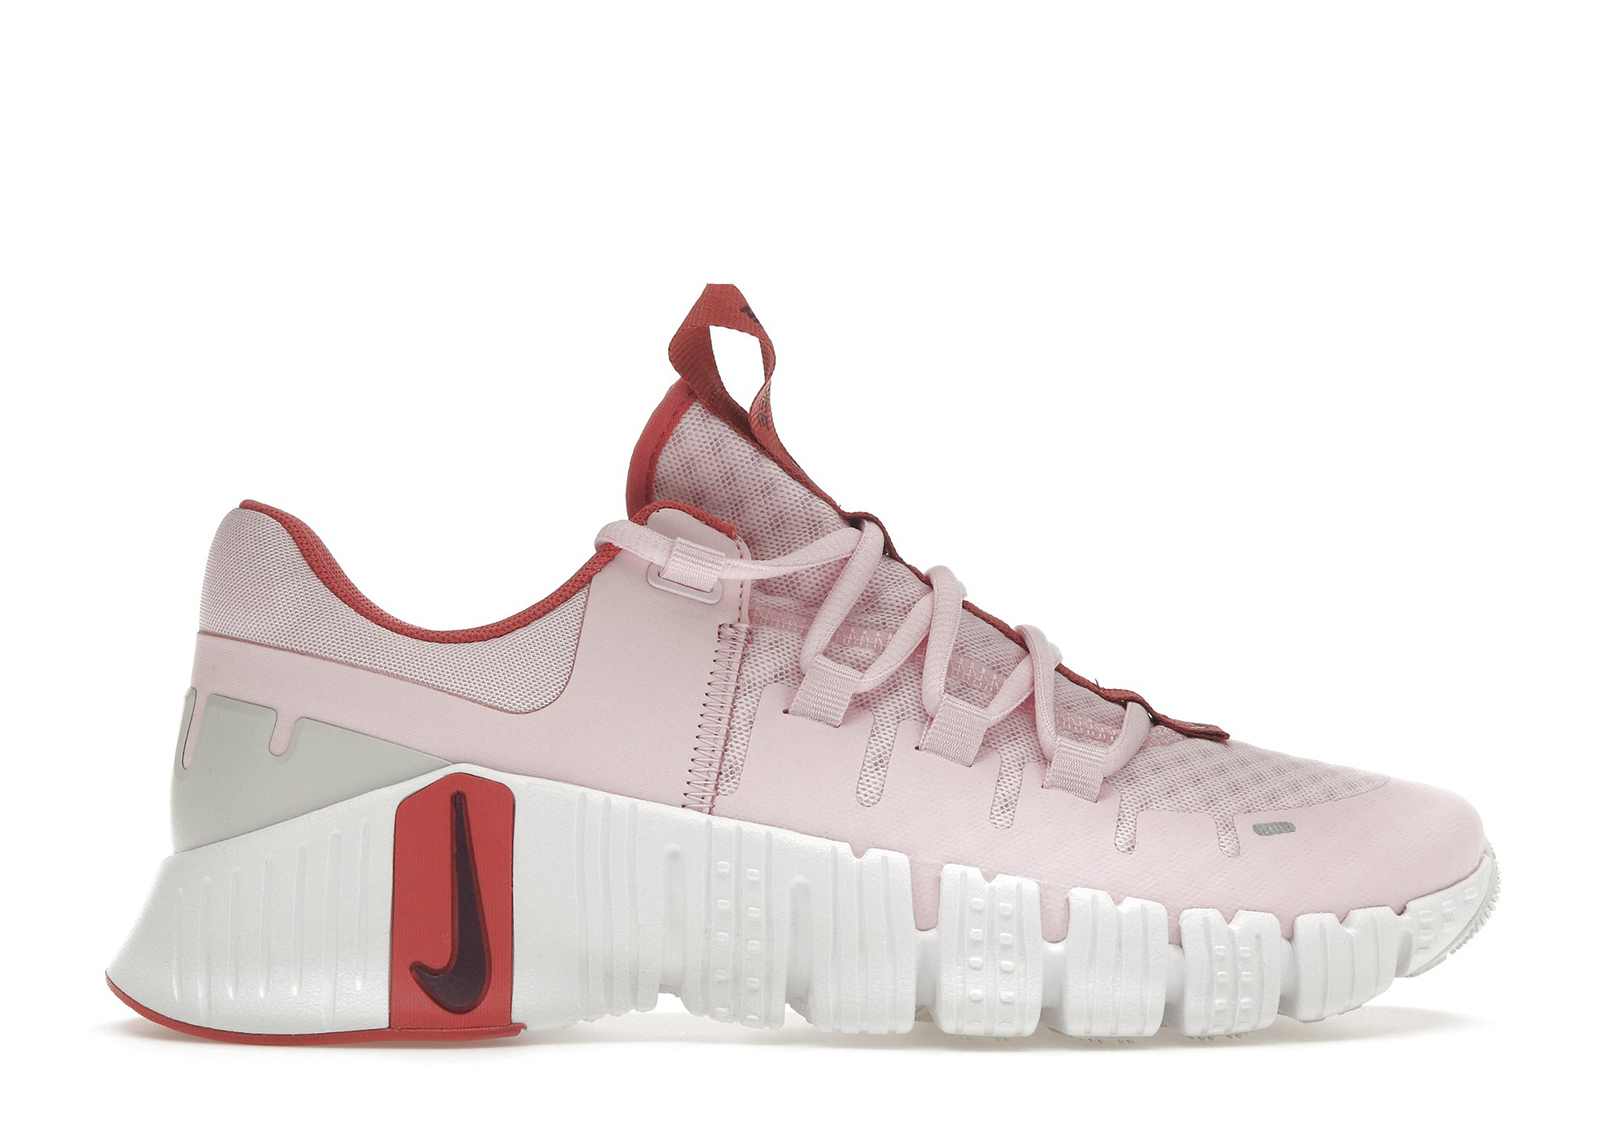 Nike Free Metcon 5 Pink Foam (Women's)